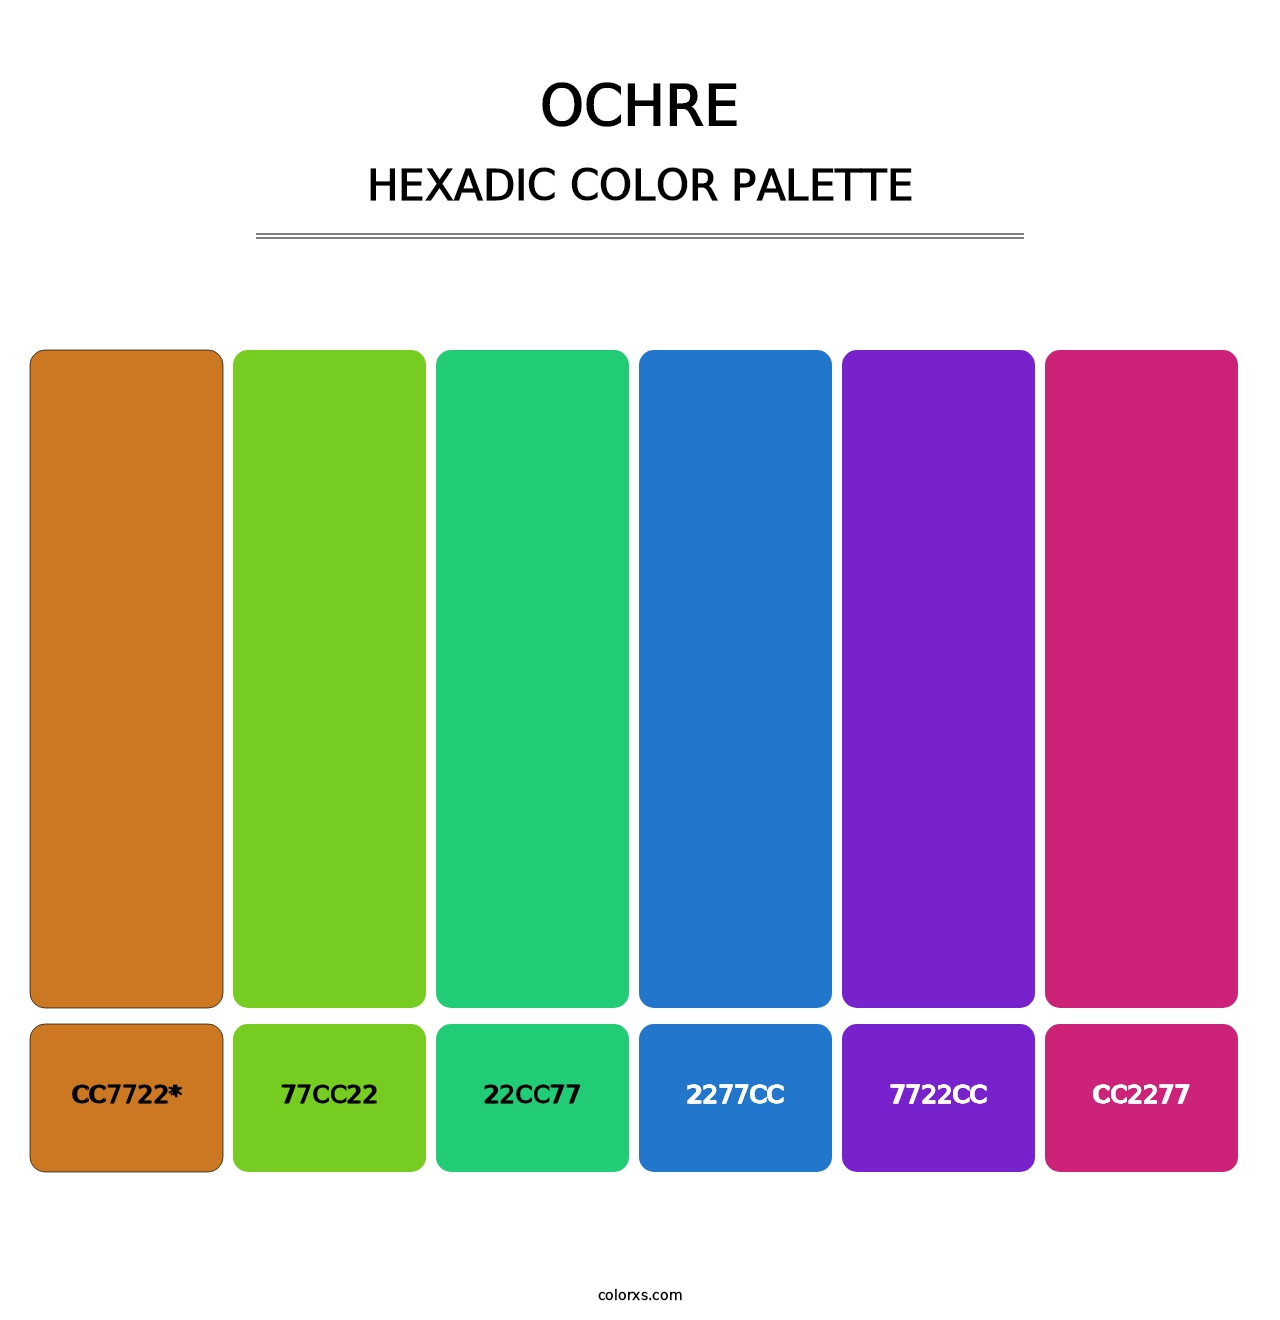 Ochre - Hexadic Color Palette